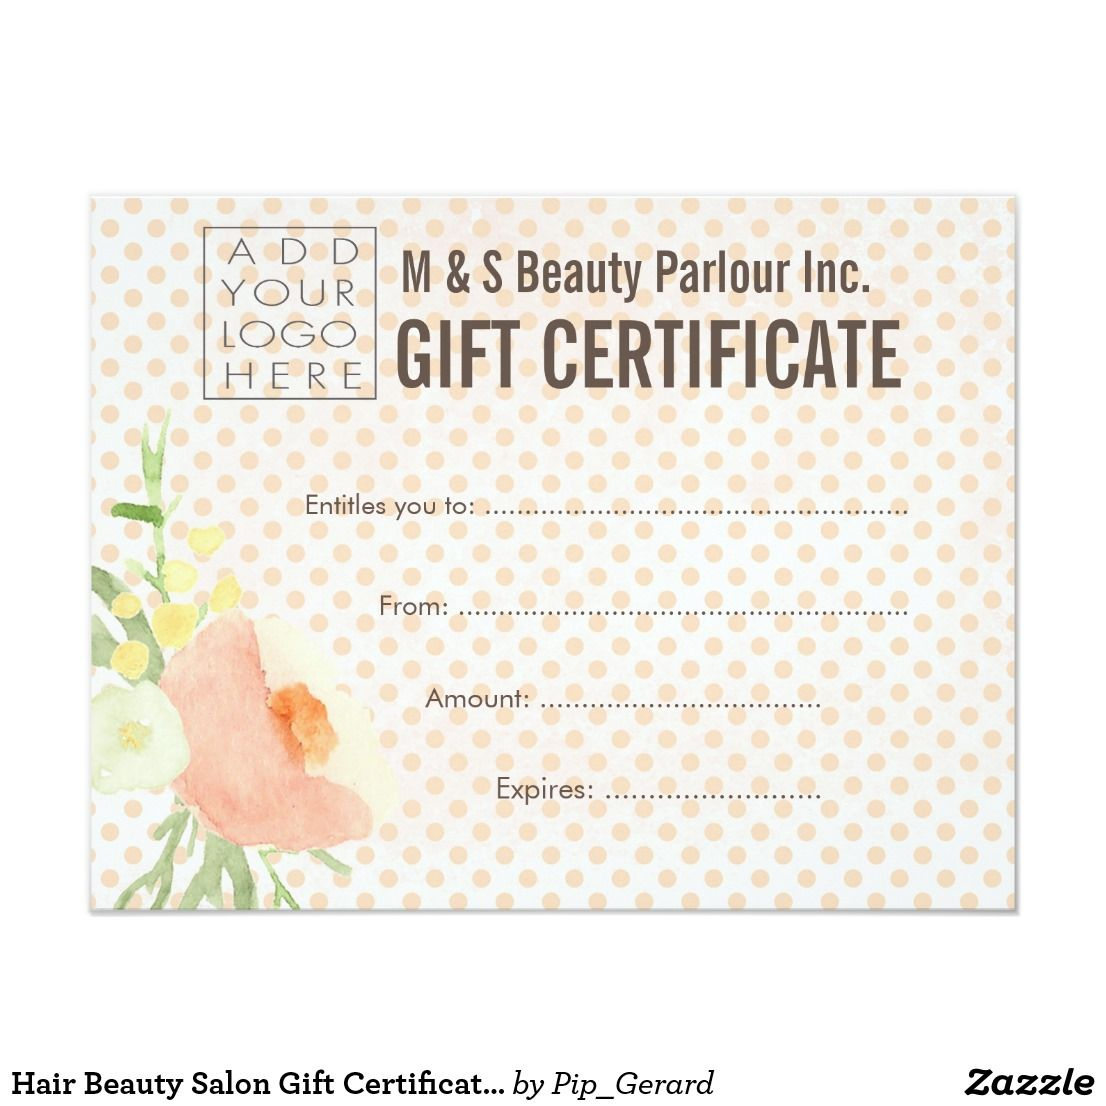 Hair Beauty Salon Gift Certificate Template | Zazzle In Salon Gift Certificate Template